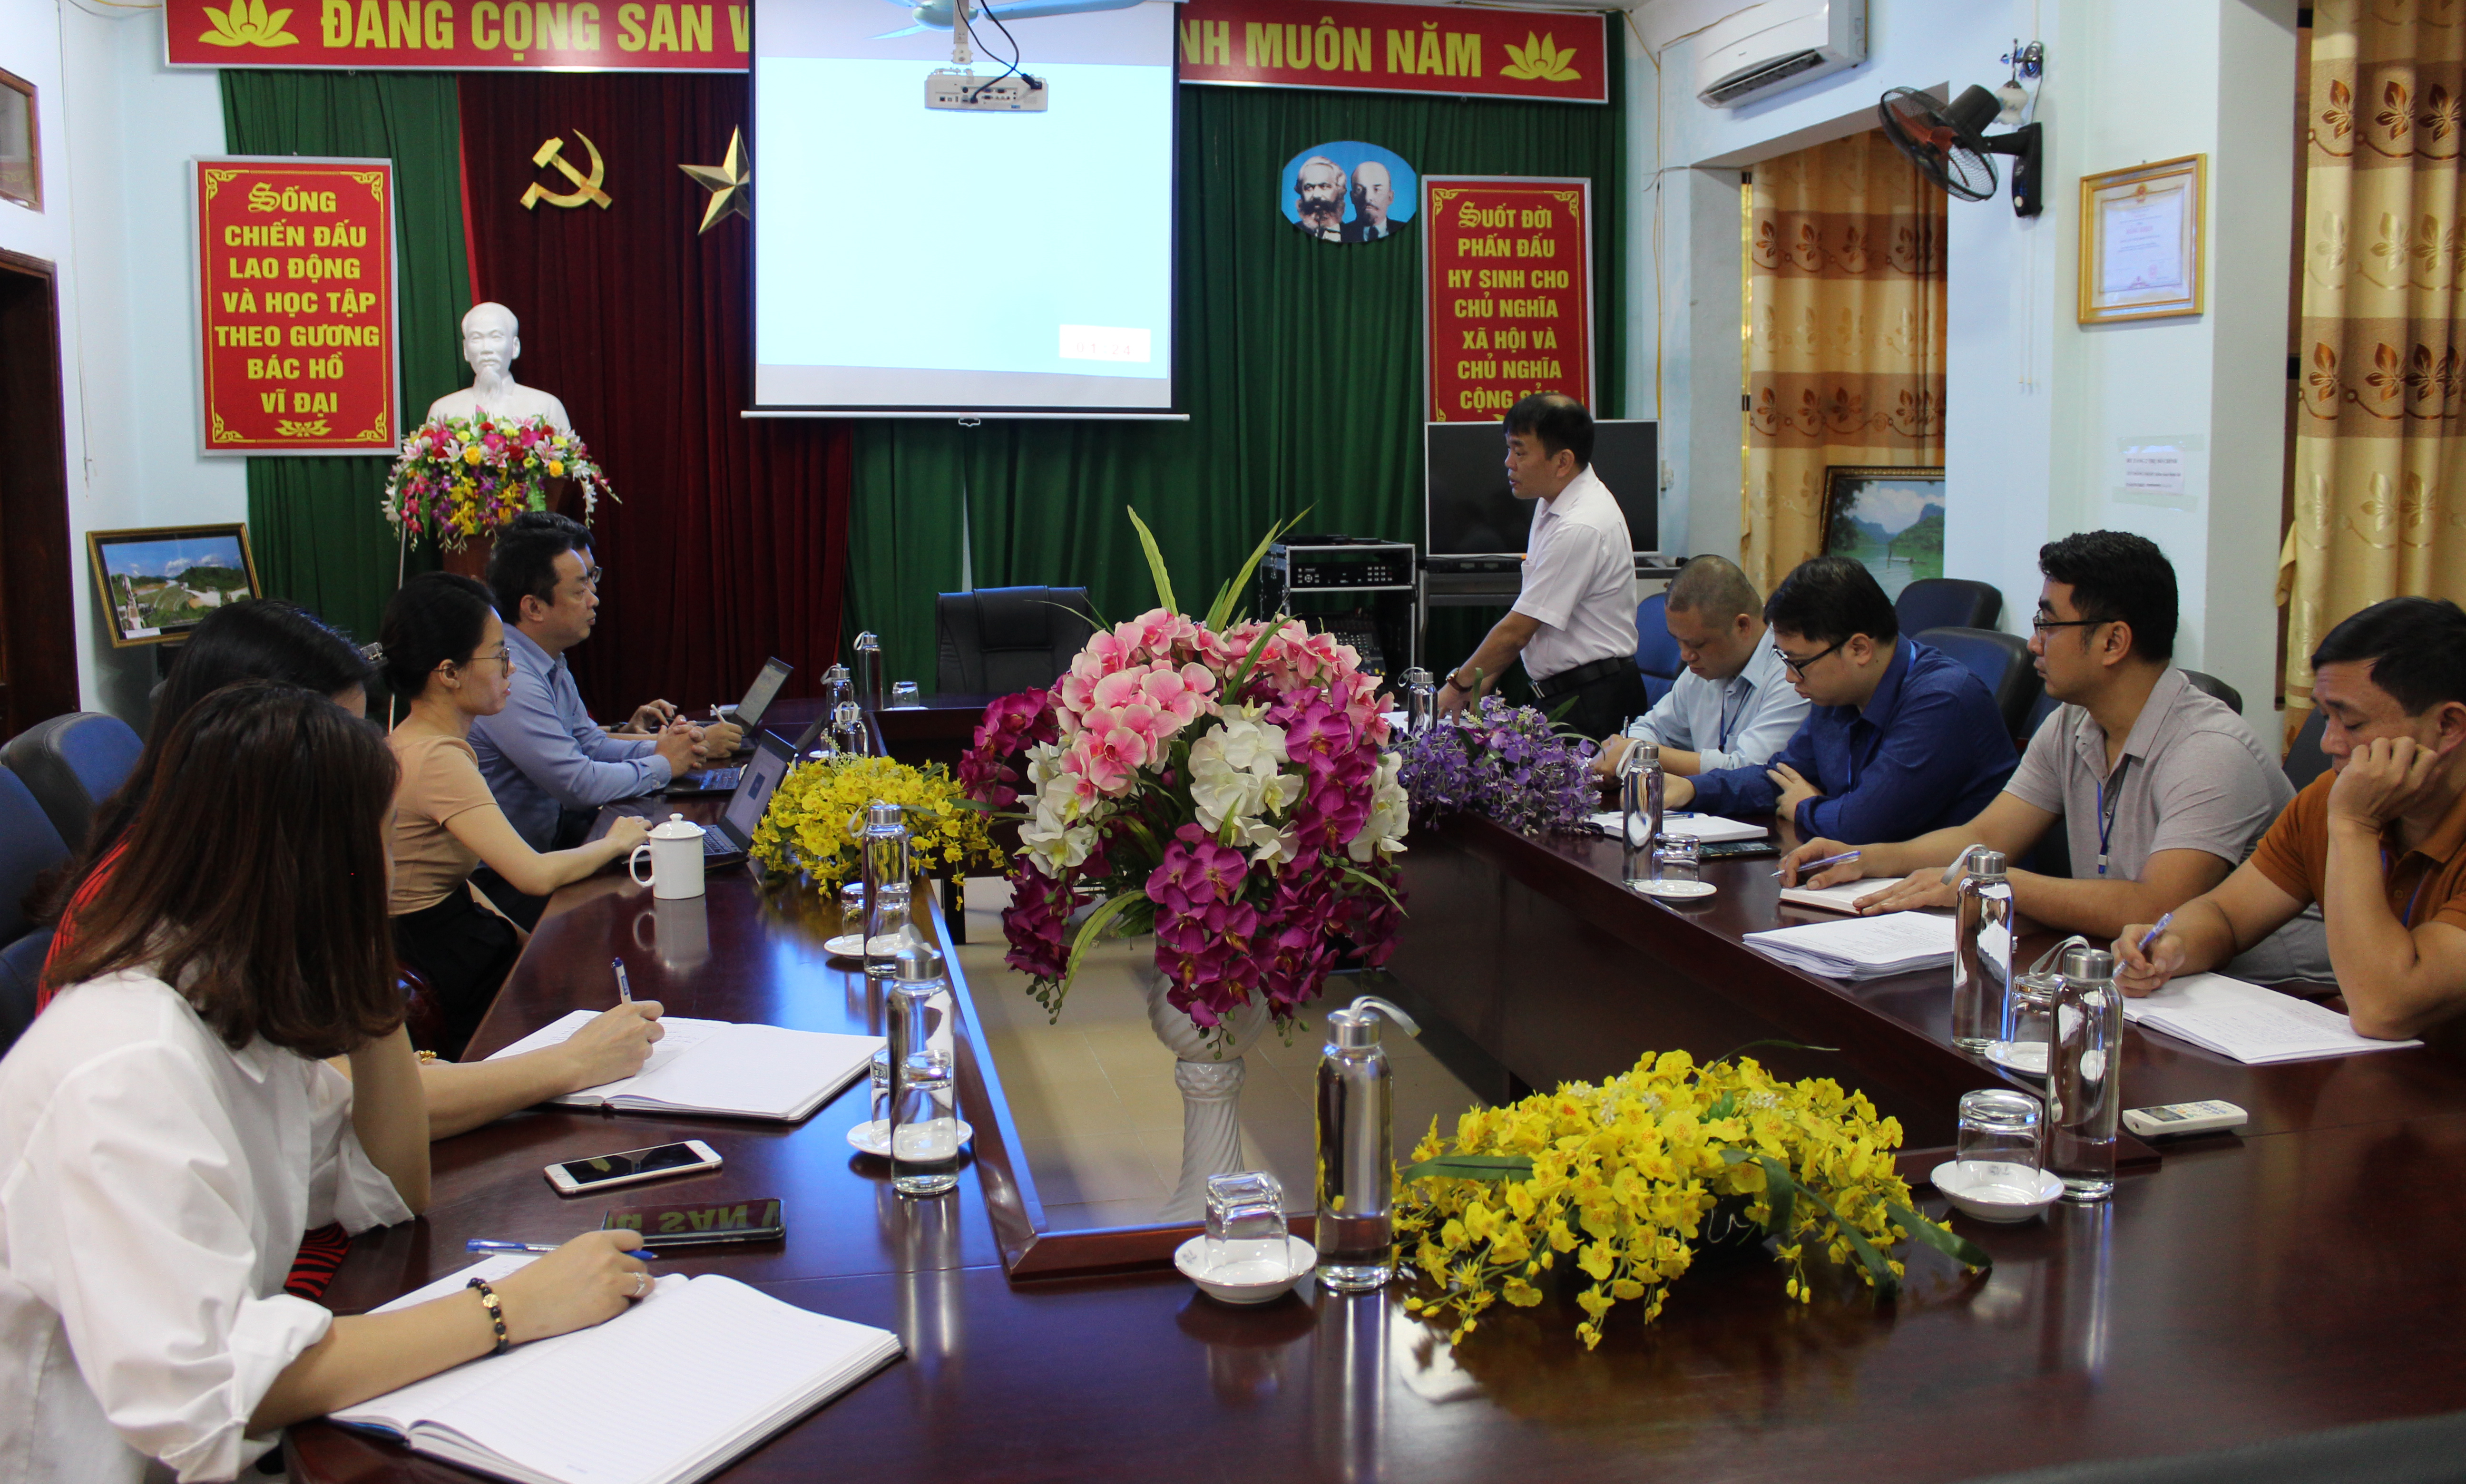 Thạc sỹ Nguyễn Trần Tuấn, Giám đốc Trung tâm Kiểm soát bệnh tật phát biểu tại buổi làm việc